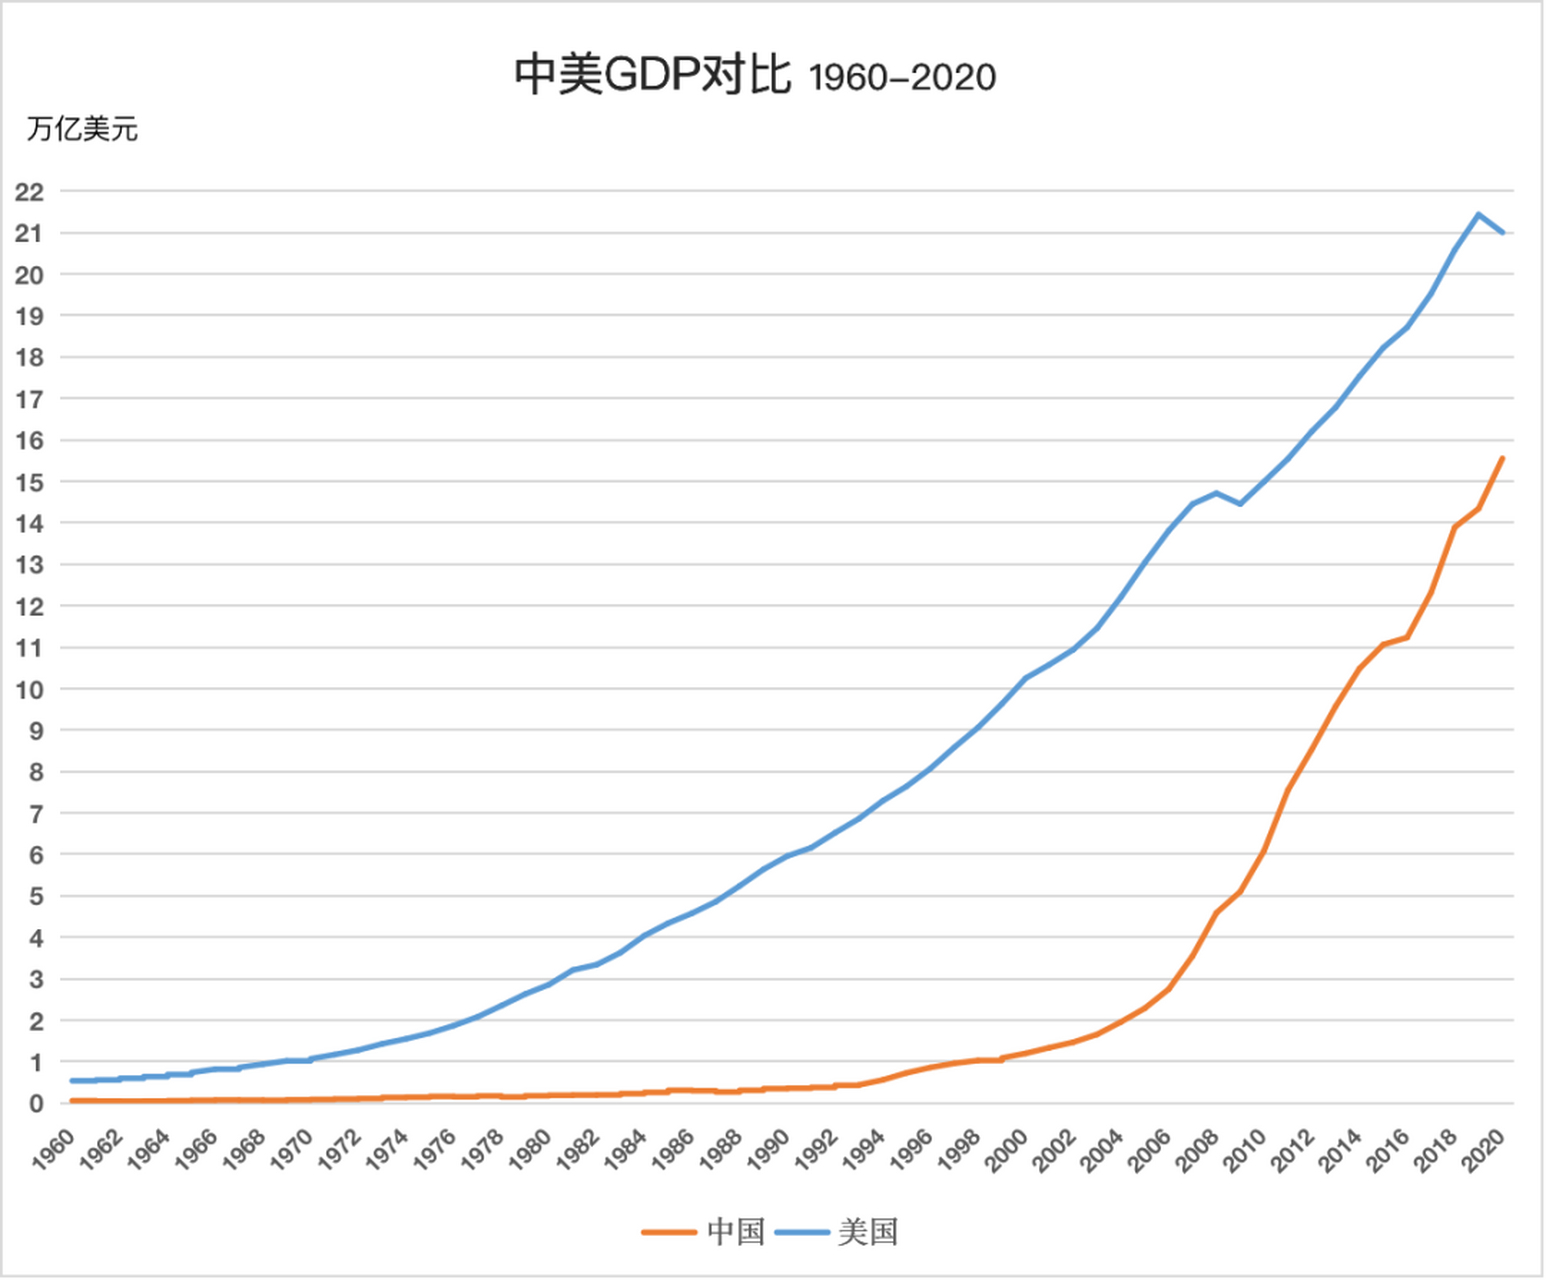 中美gdp对比 1949年  中国gdp 179亿美元,美国gdp 2700亿美元,中国是